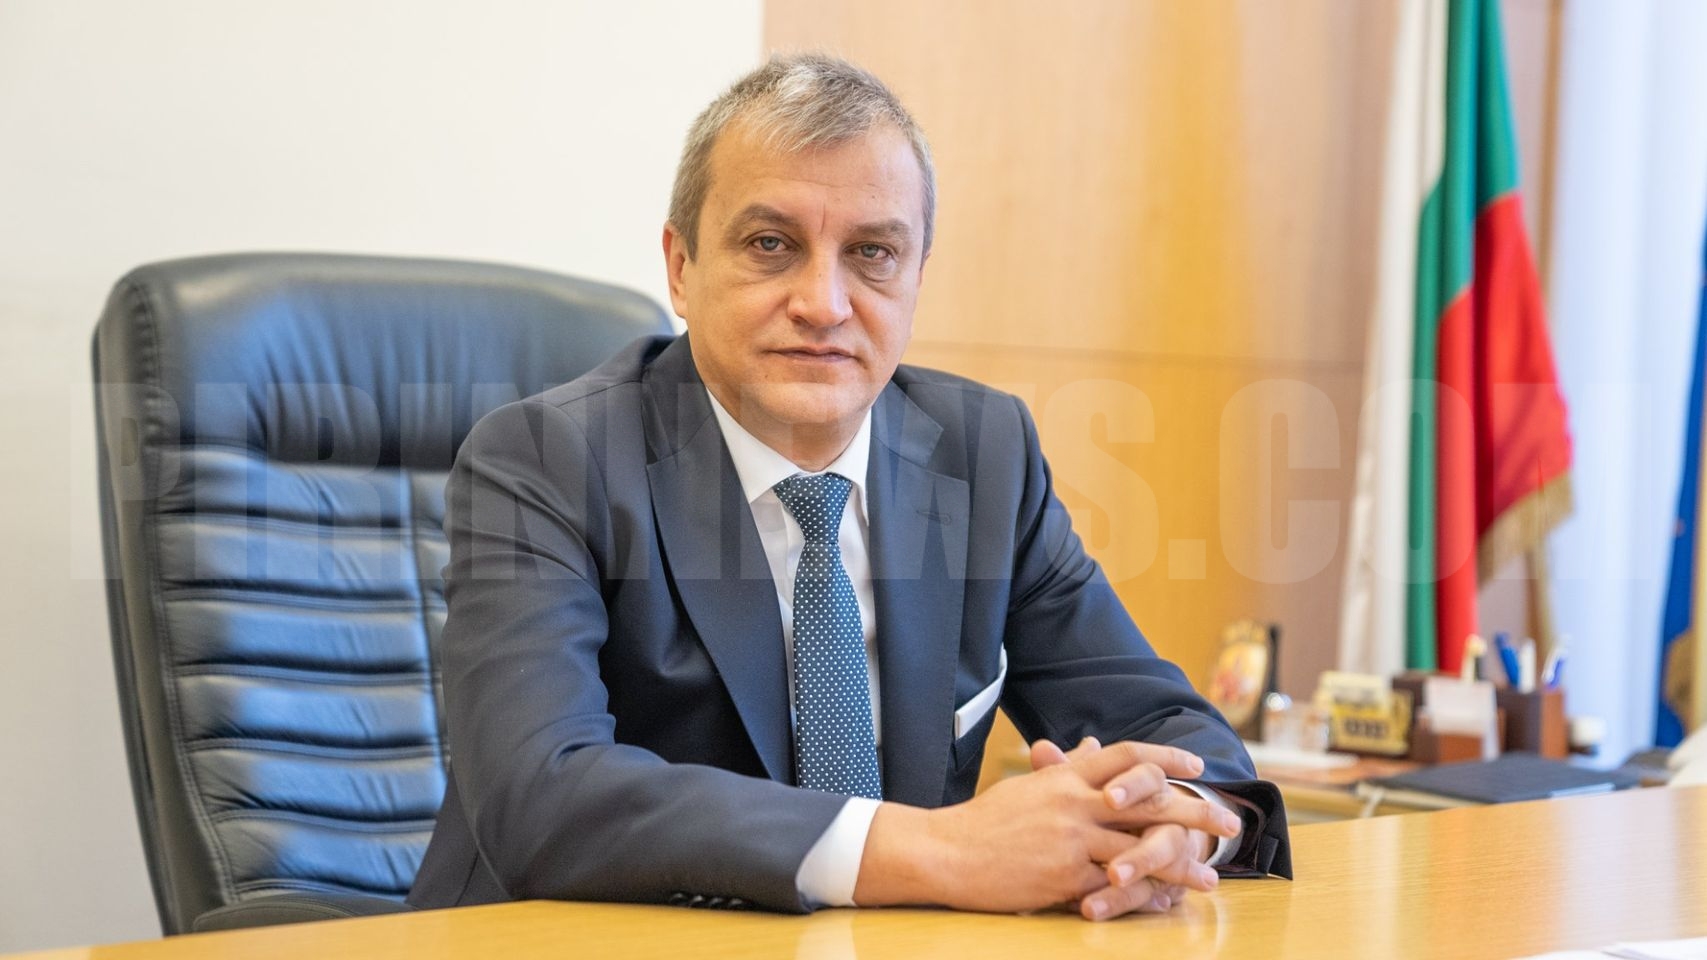 Кметът Илко Стоянов: Частичните изменения на Общия устройствен план разпокъсват общината на парчета и унищожават всякакви идеи за бъдещо градоустройство